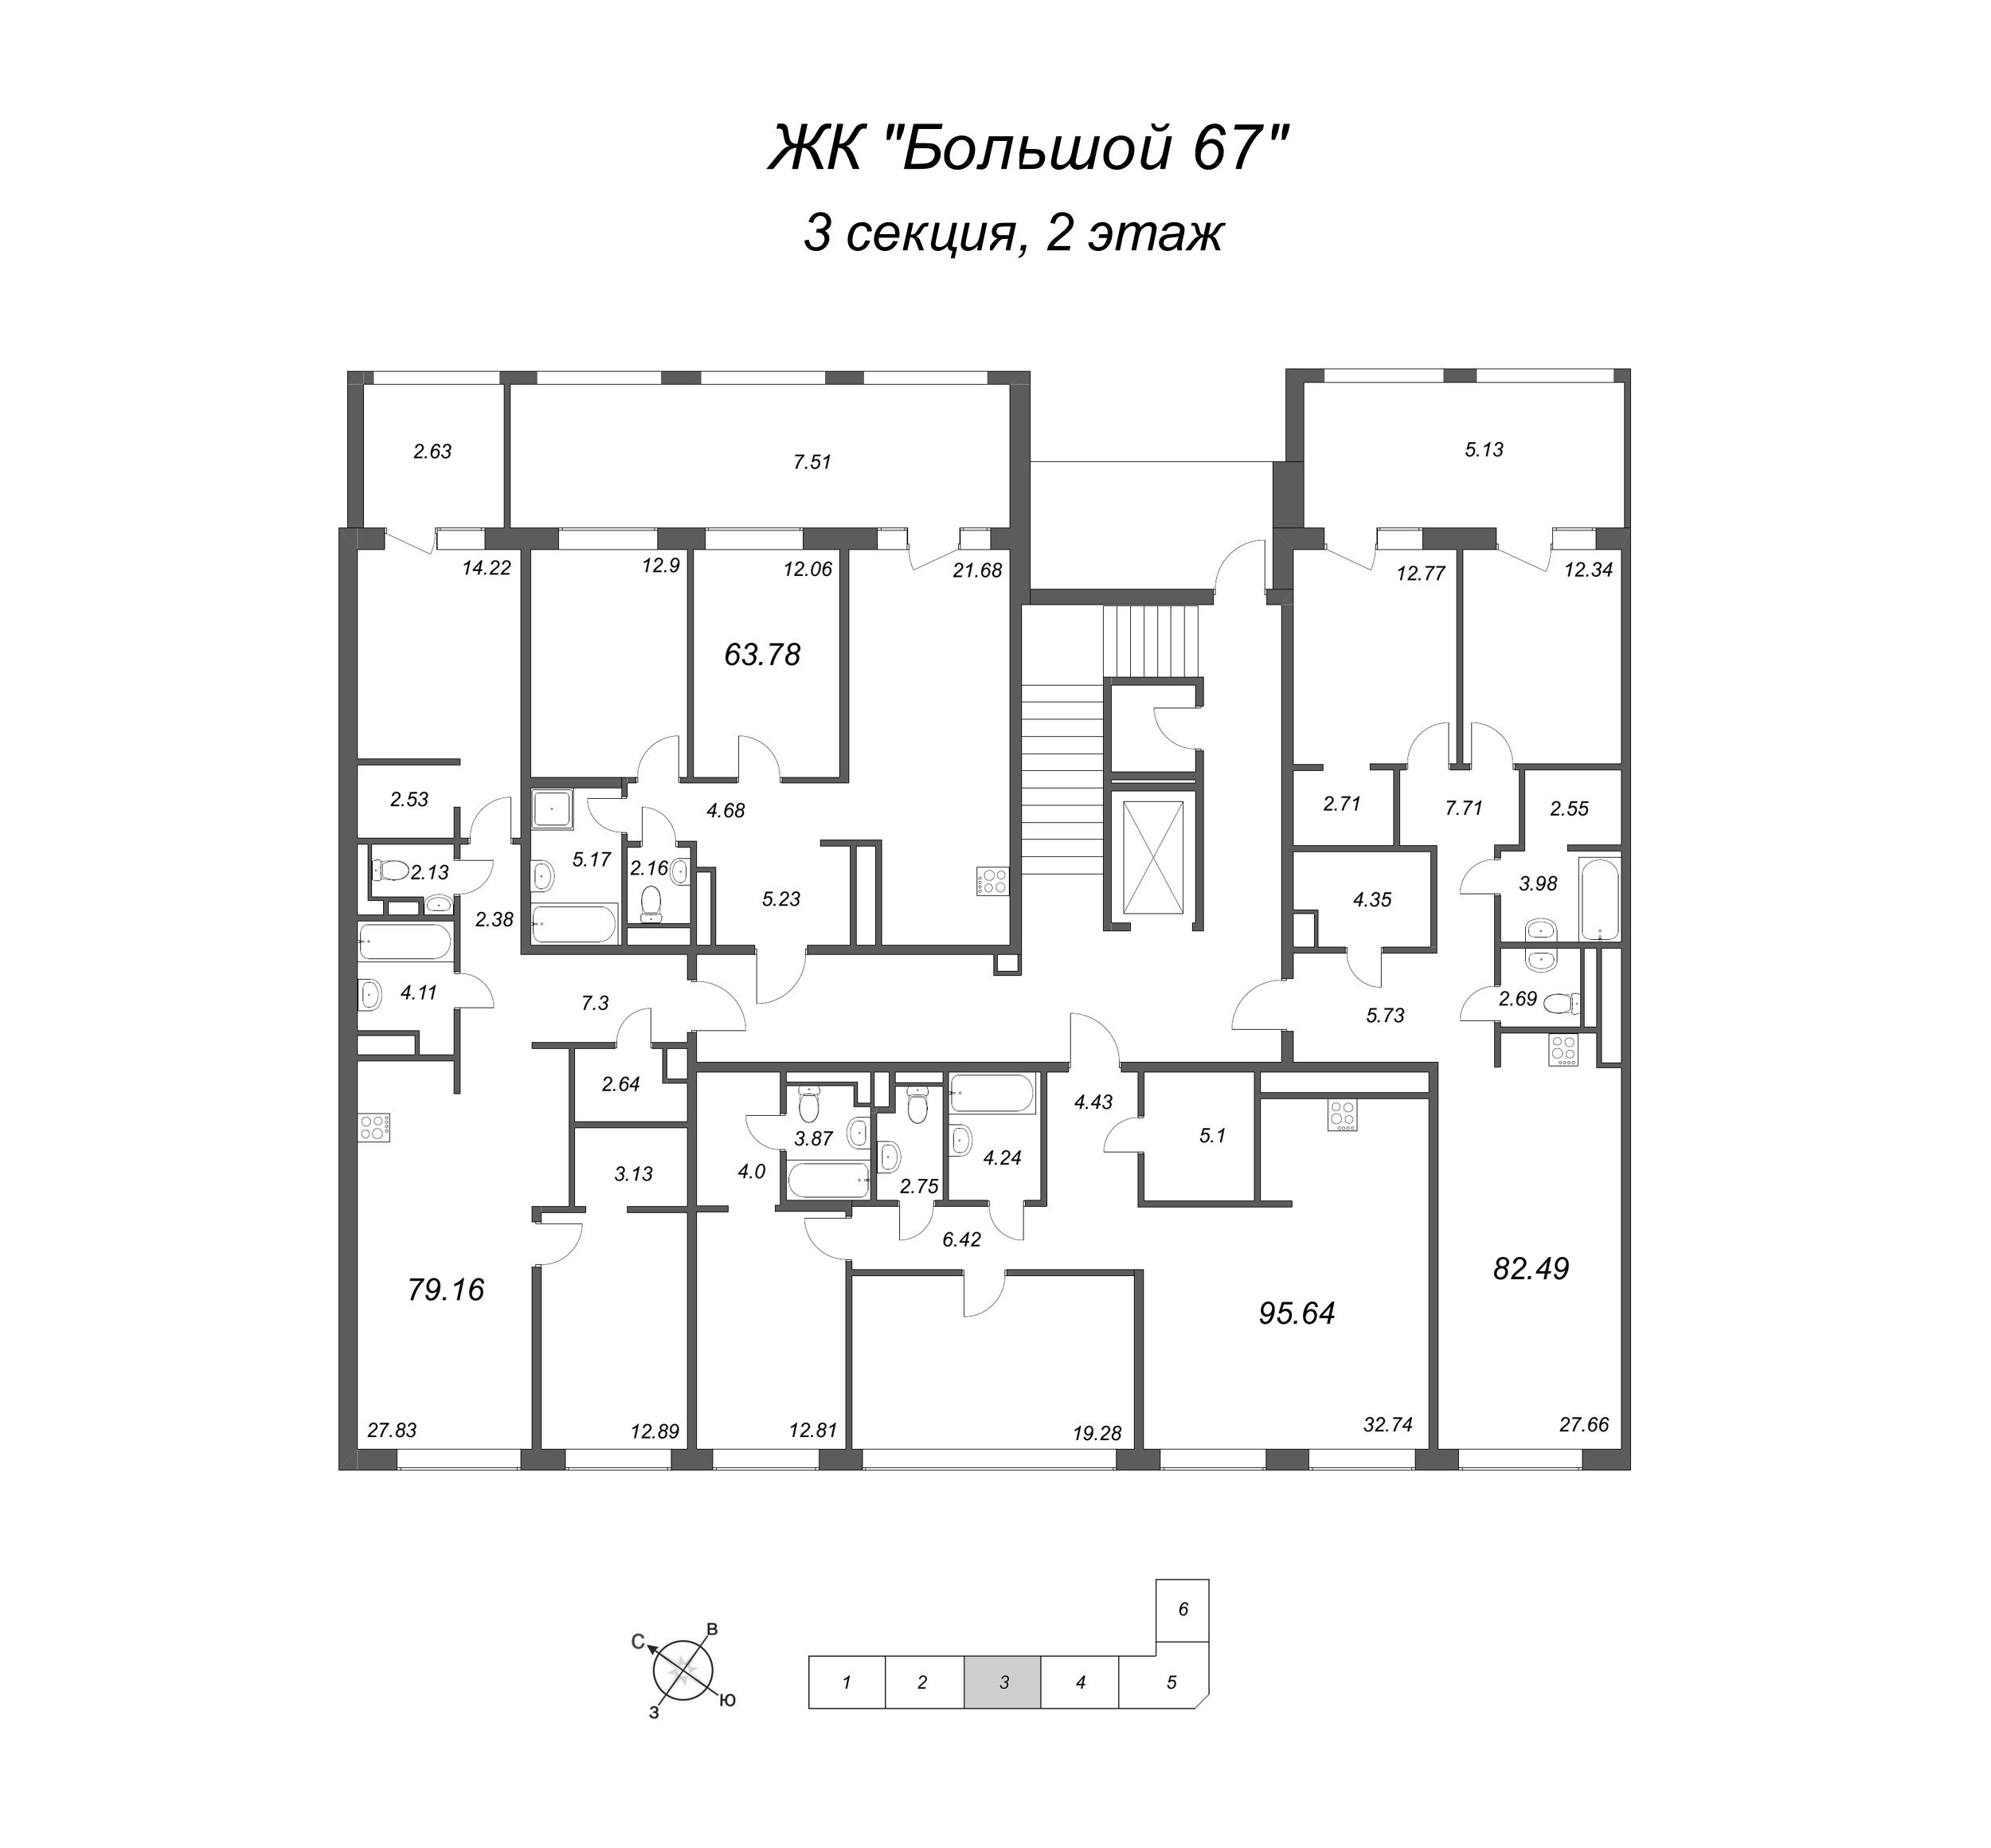 3-комнатная (Евро) квартира, 95.64 м² в ЖК "Большой, 67" - планировка этажа